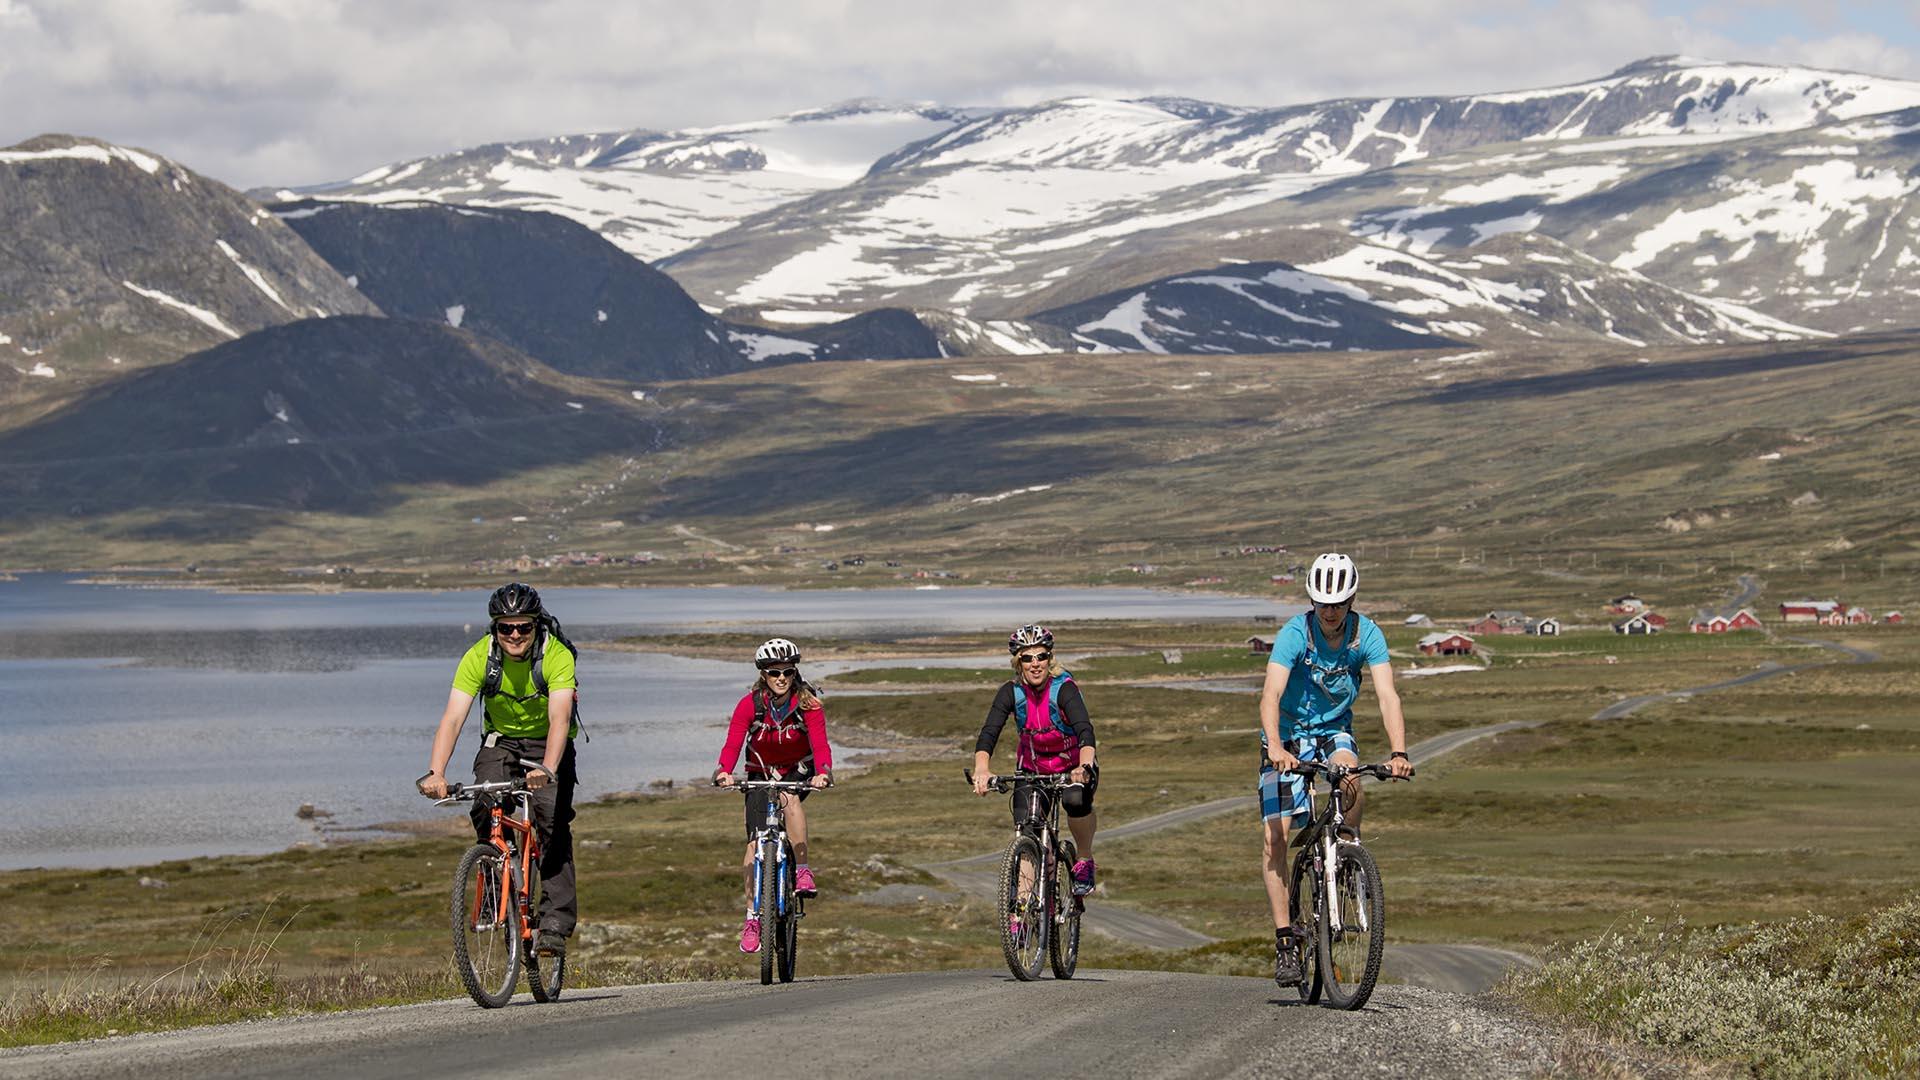 Vier Radfahrer in farbenfroher Bekleidung radeln auf einer Schottertsraßen im Hochgebirge auf den Fotografen zu. Im Hintergrund sieht man einen größeren See und hohe, teilweise noch schneebedeckte Berge.d